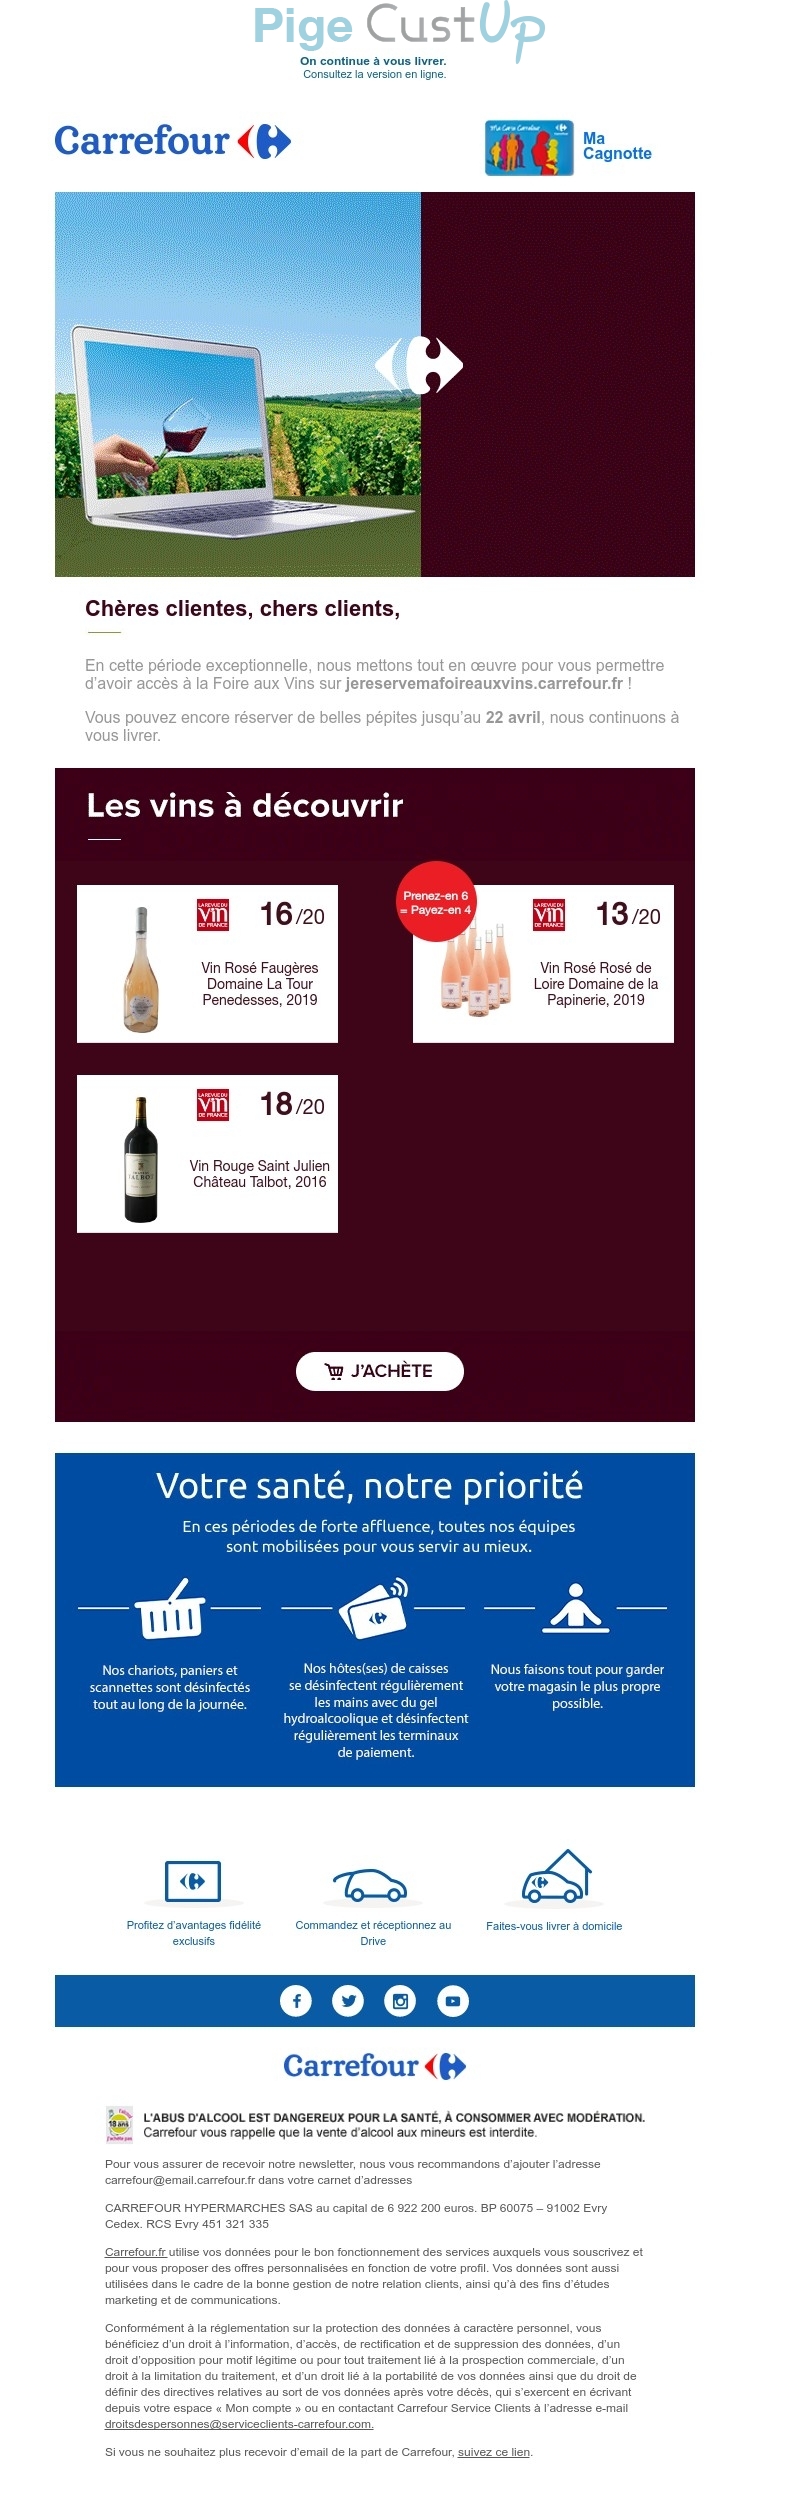 Exemple de Type de media  e-mailing - Carrefour - Marketing fidélisation - Incitation au réachat